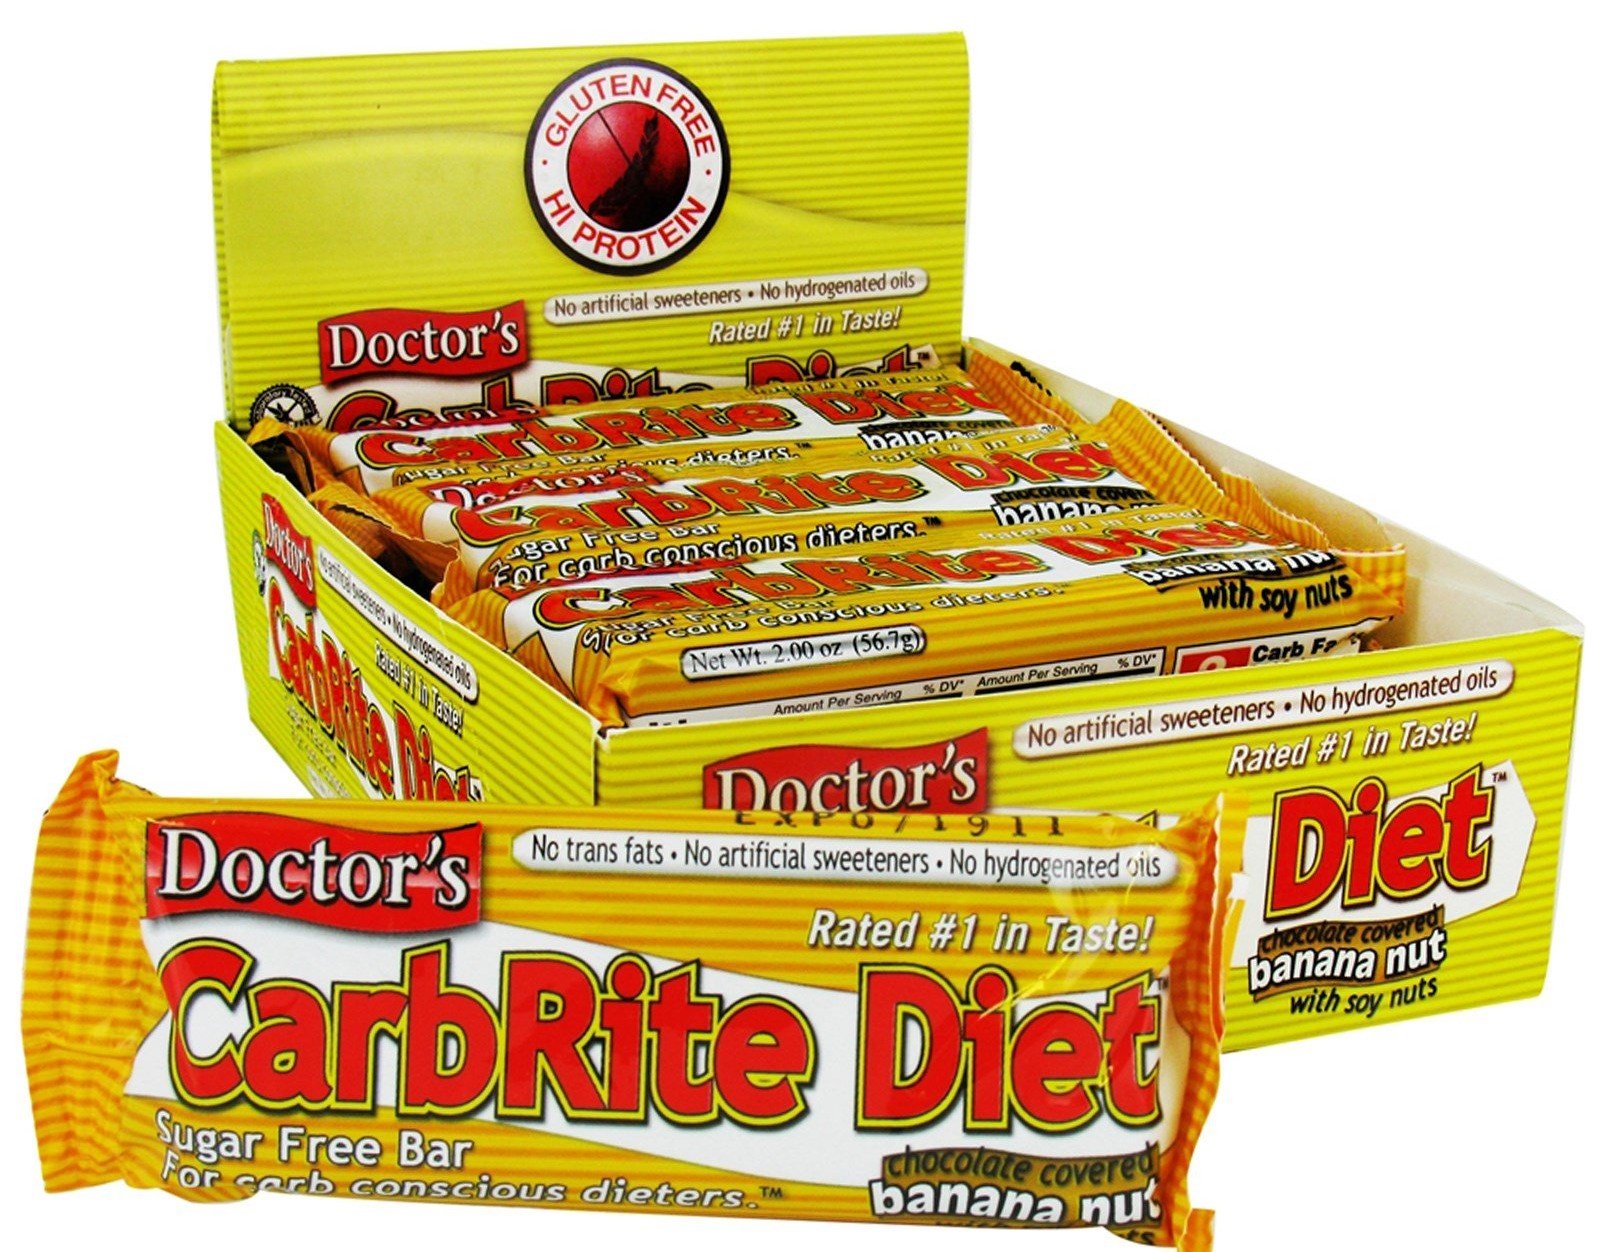 CarbRite Diet, 12 pcs, Universal Nutrition. Bar. 